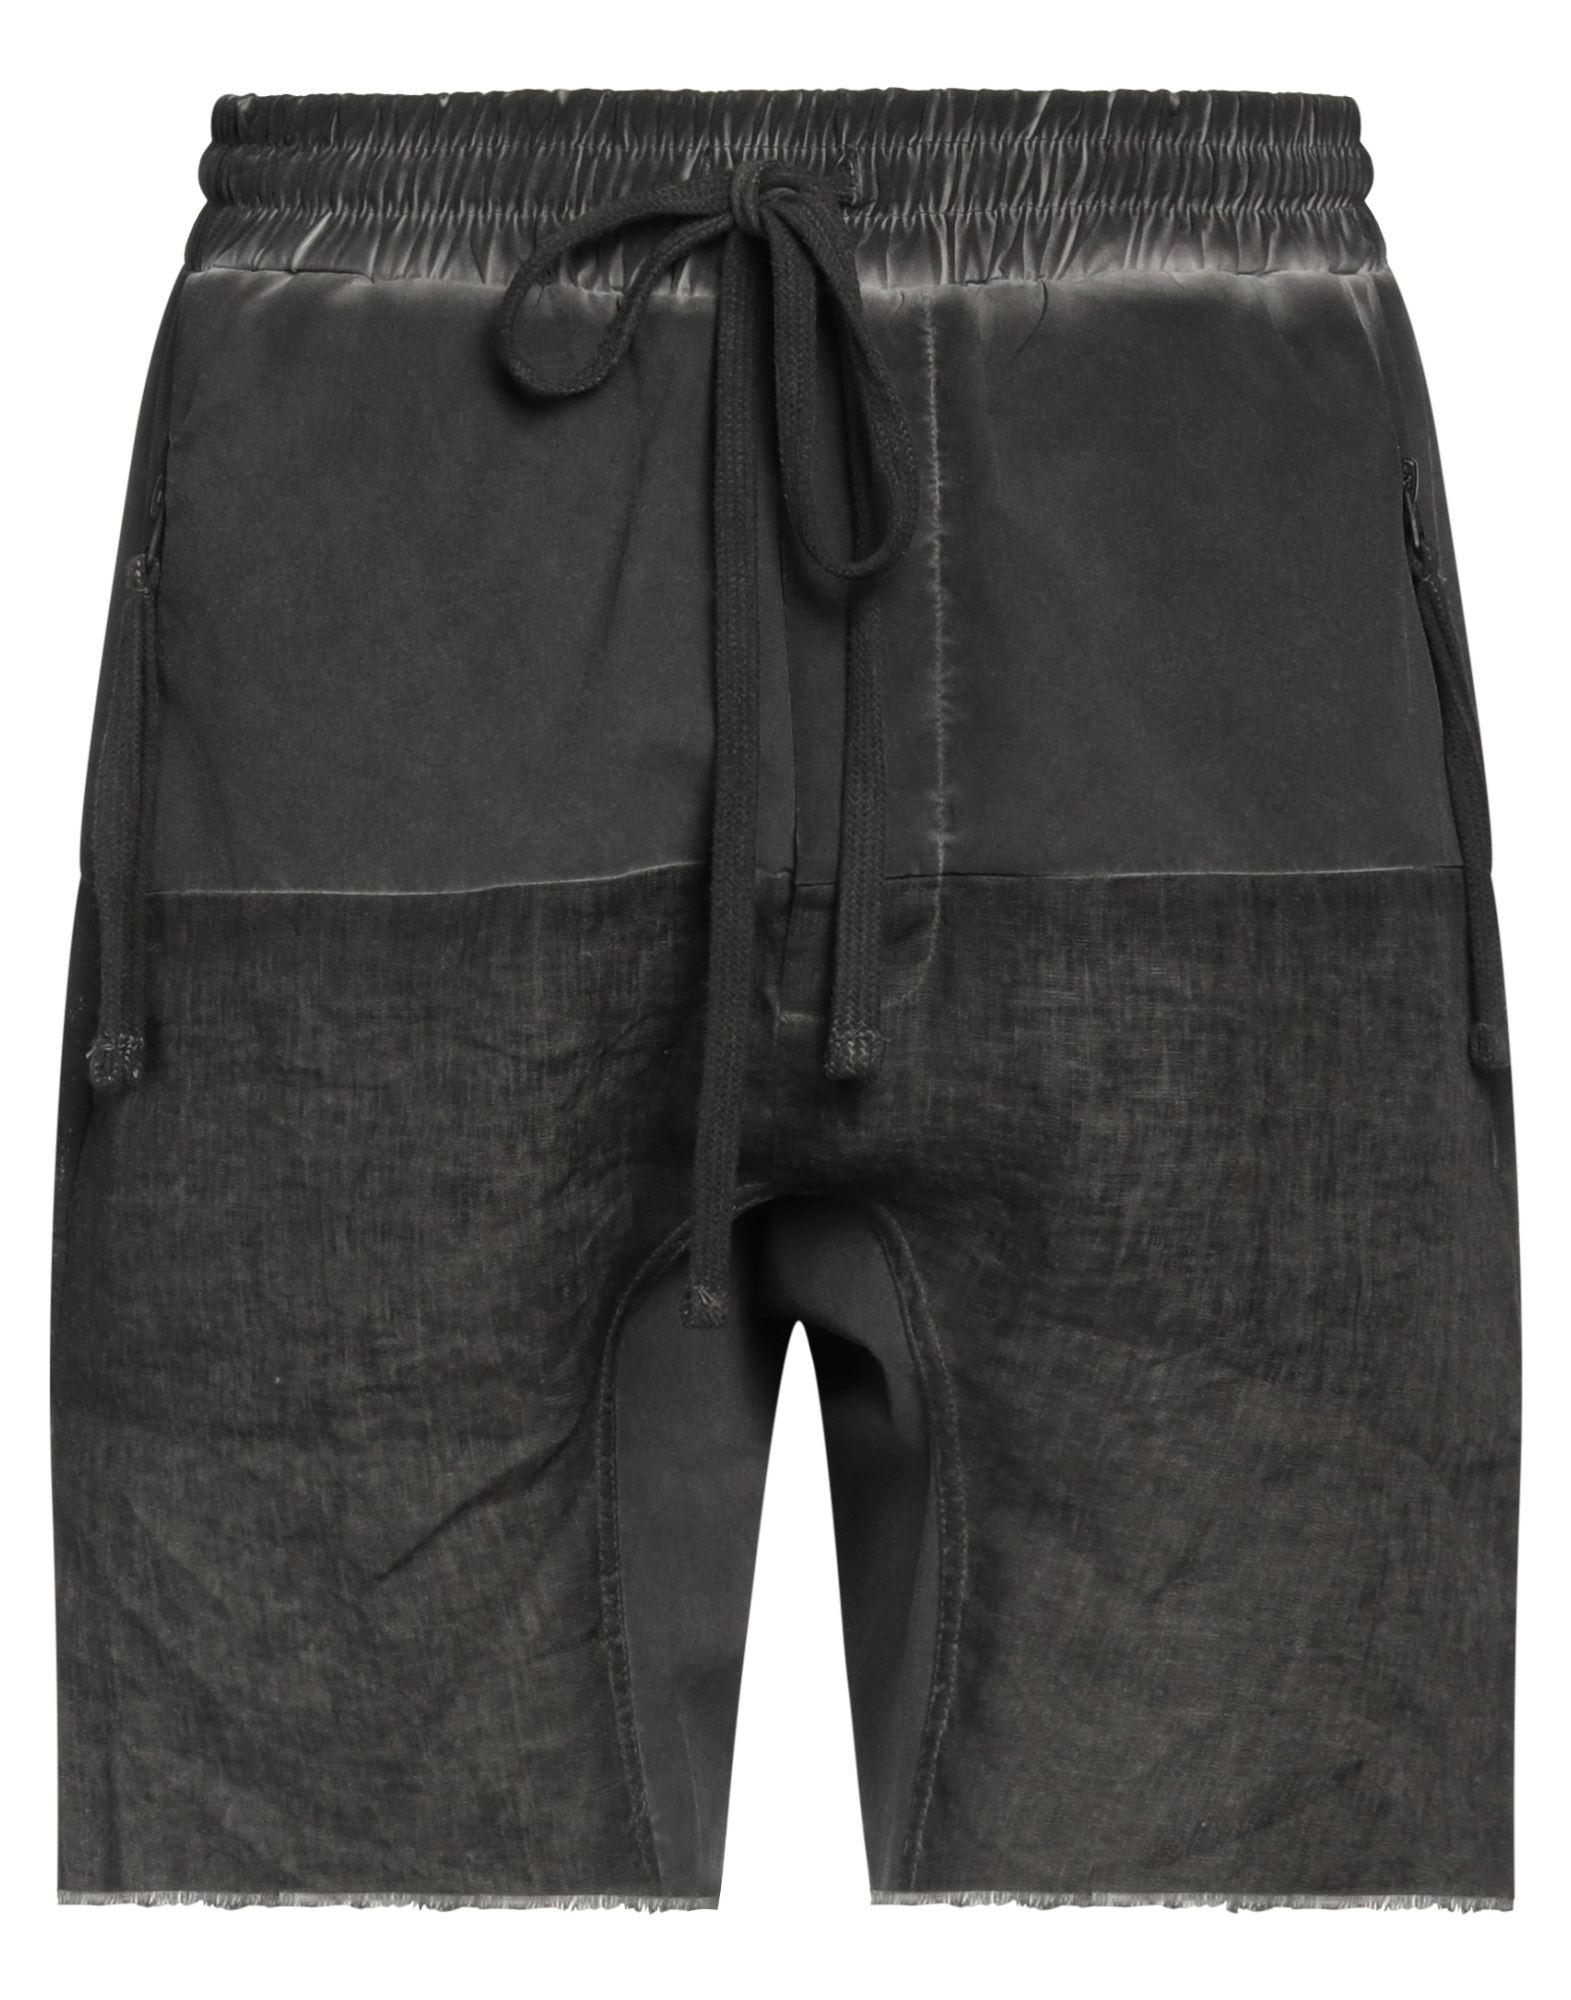 Thom Krom Man Shorts & Bermuda Shorts Steel Grey Size M Linen, Nylon, Elastane